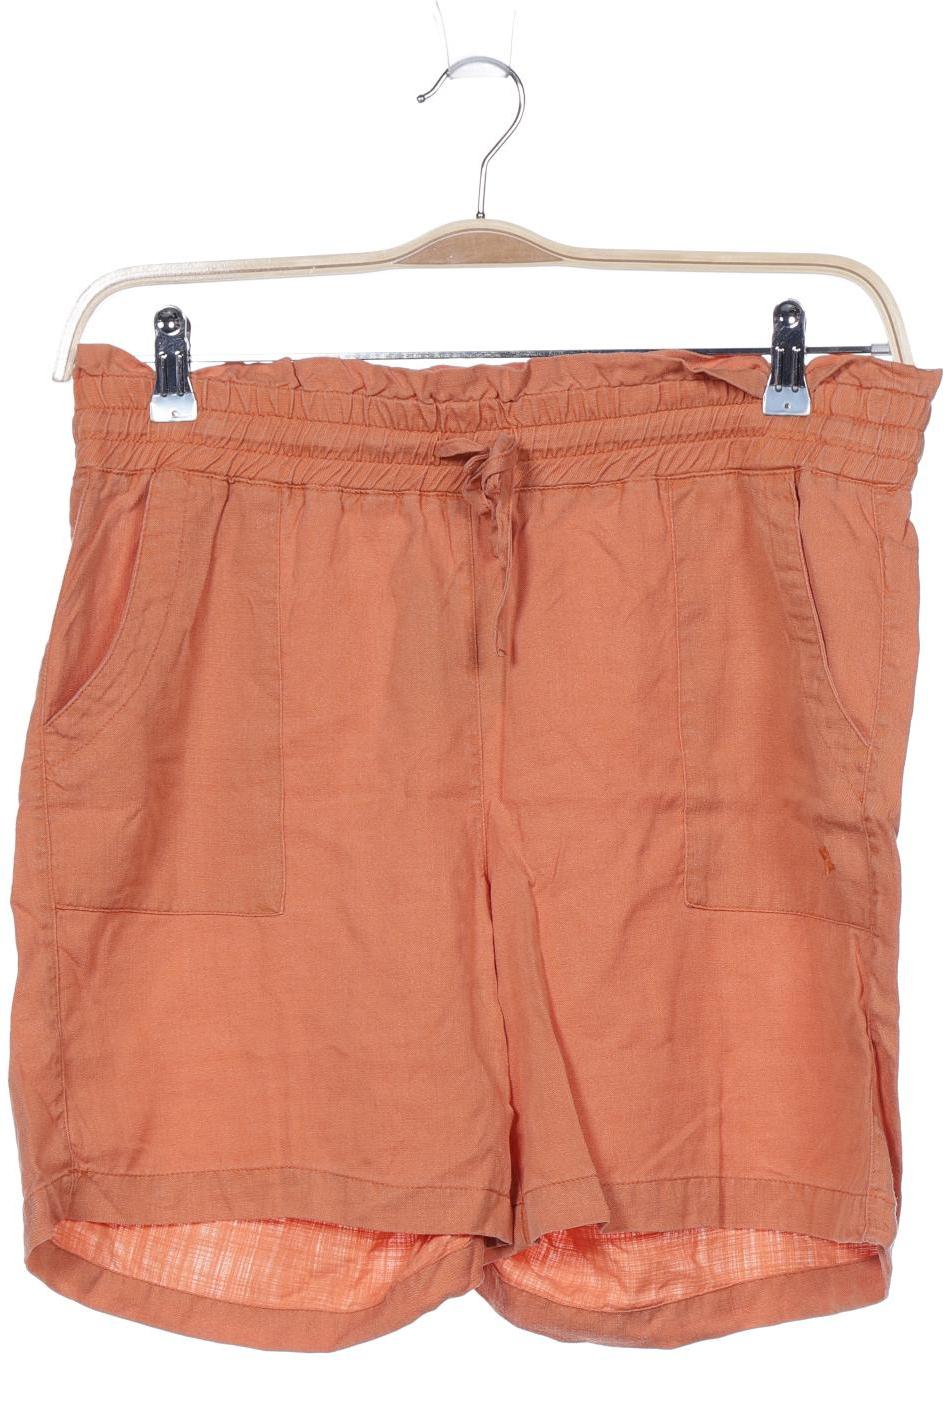 Recolution Damen Shorts, orange von recolution